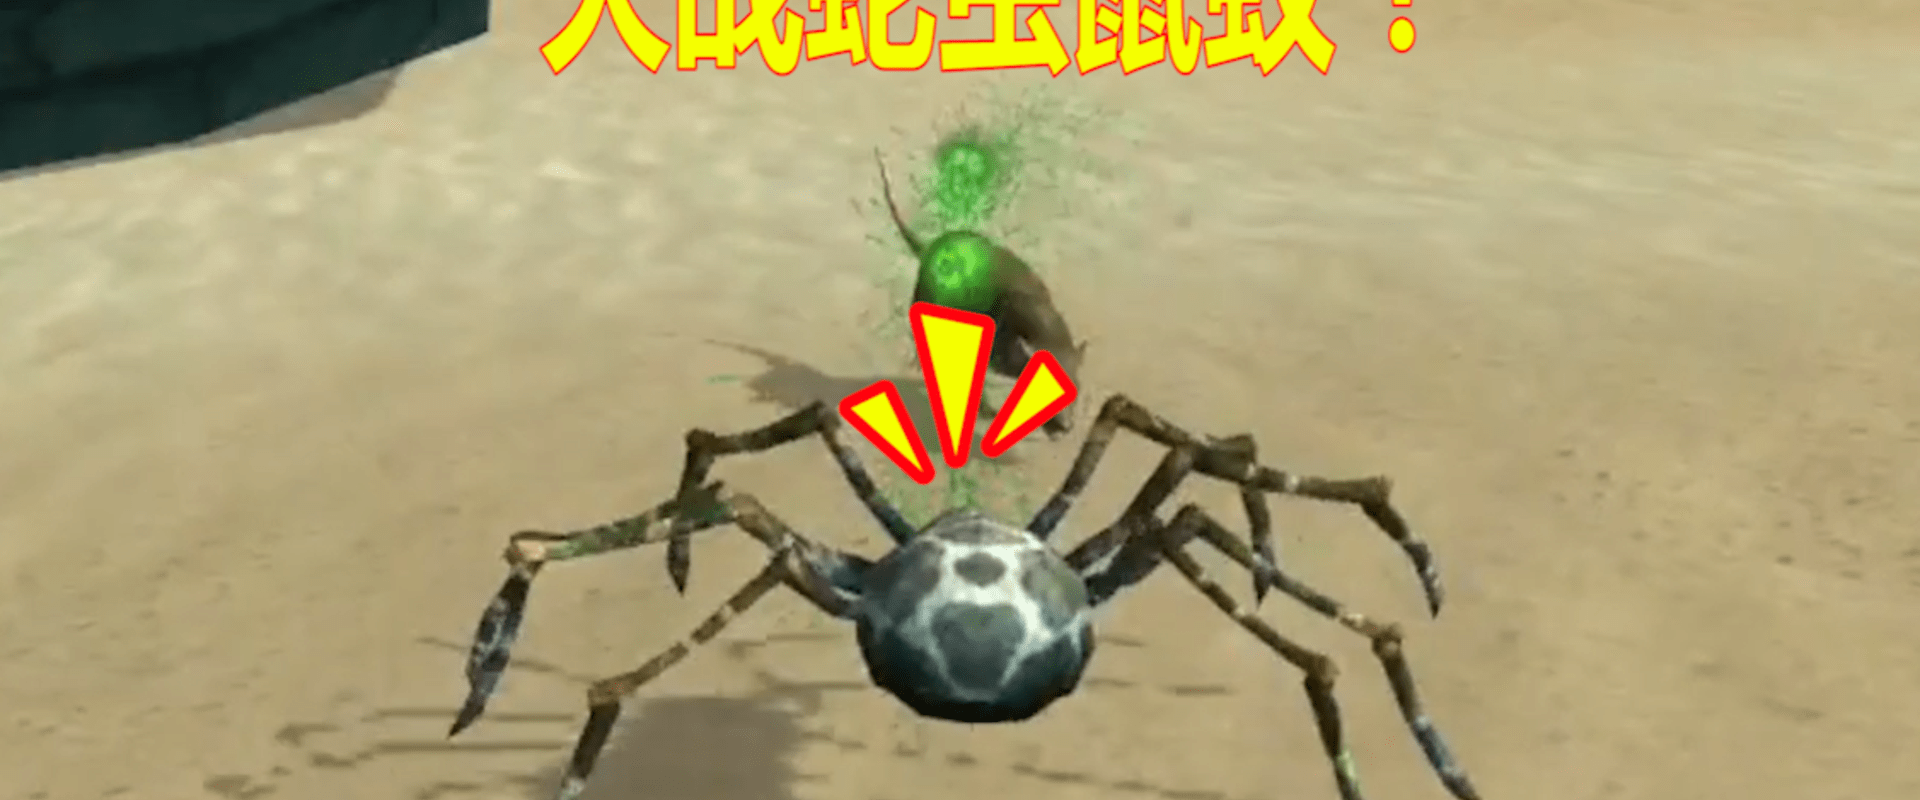 模拟变异大蜘蛛:巨型蜘蛛来到小岛,决定打败蛇虫鼠蚁占领这座岛